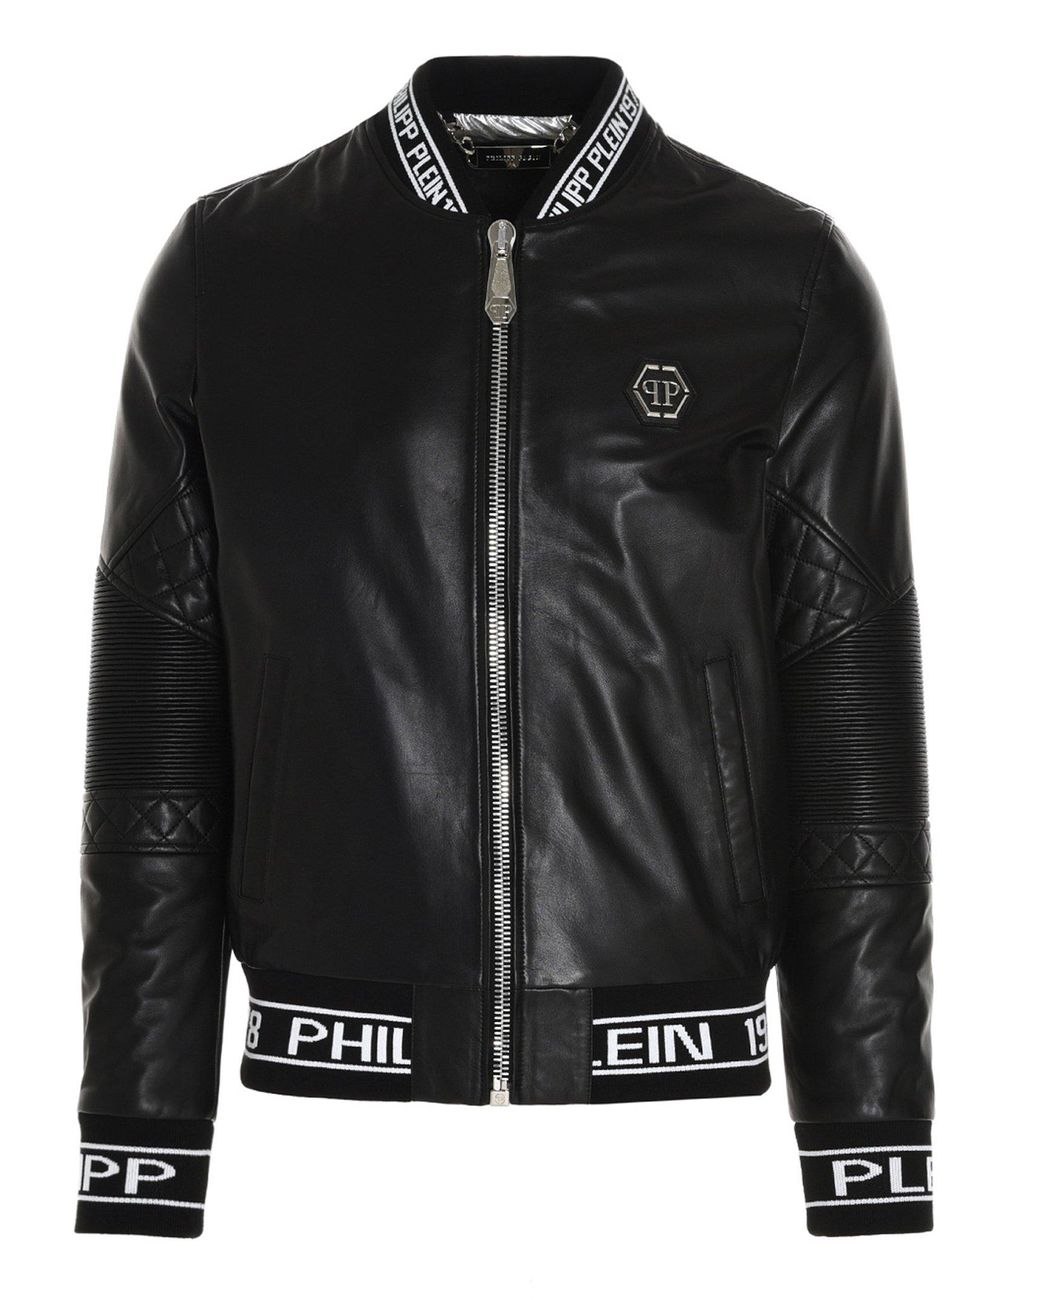 Philipp Plein Logo Detail Leather Bomber Jacket in Black for Men - Lyst